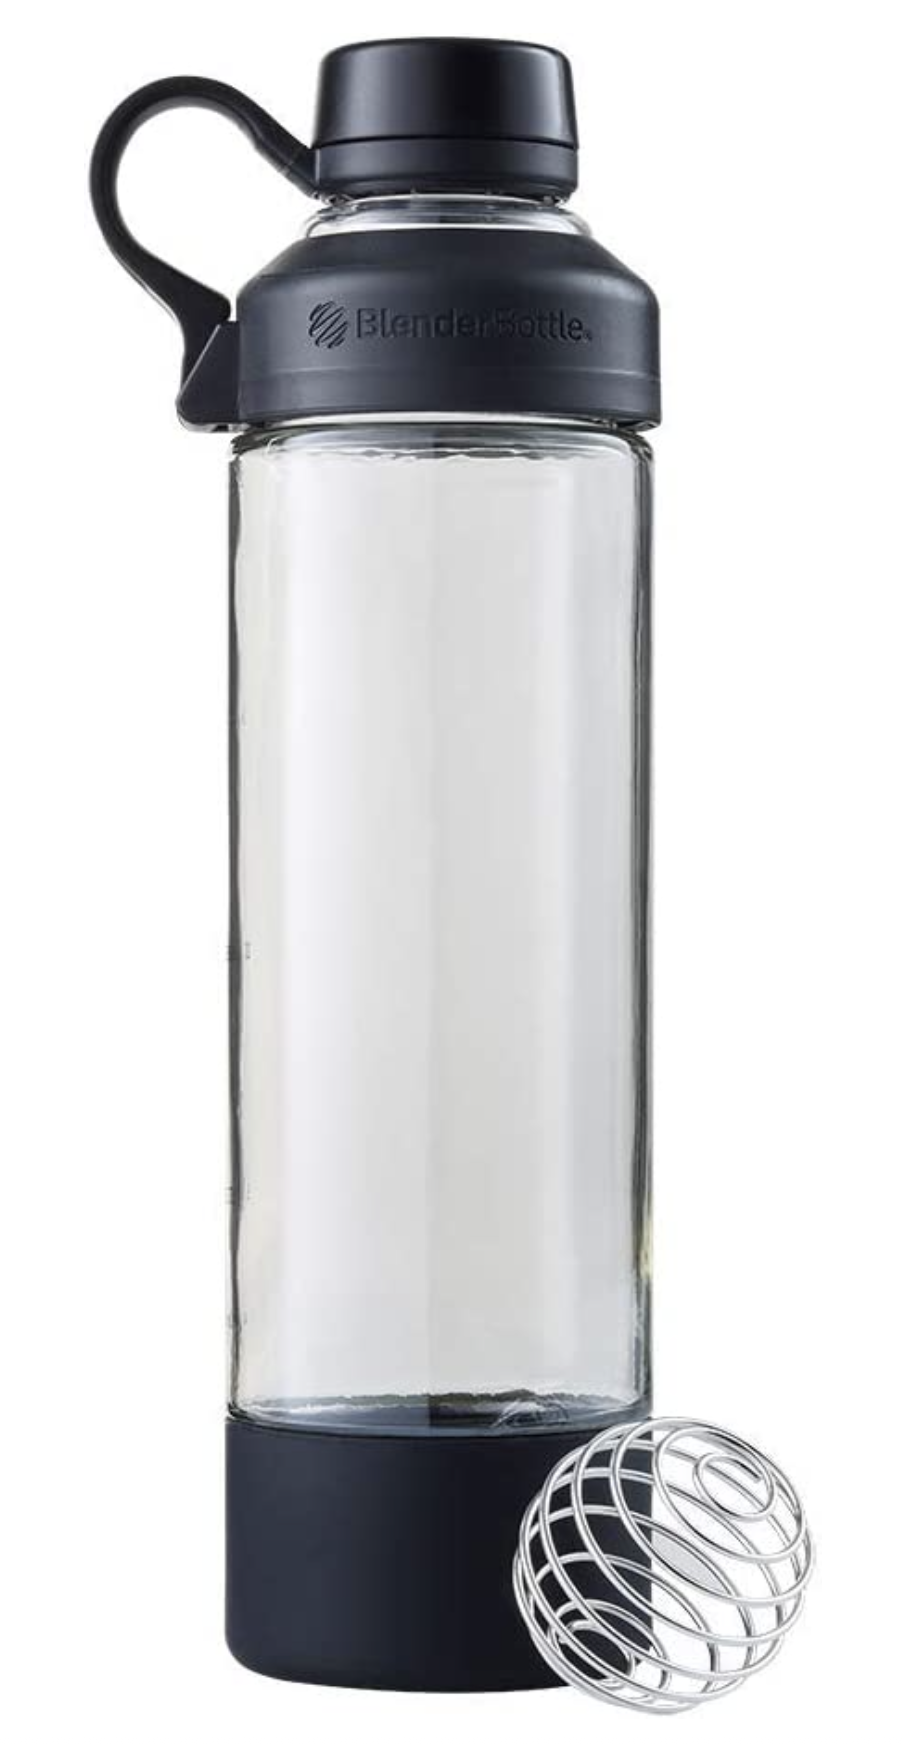 shaker bottle for Advantage